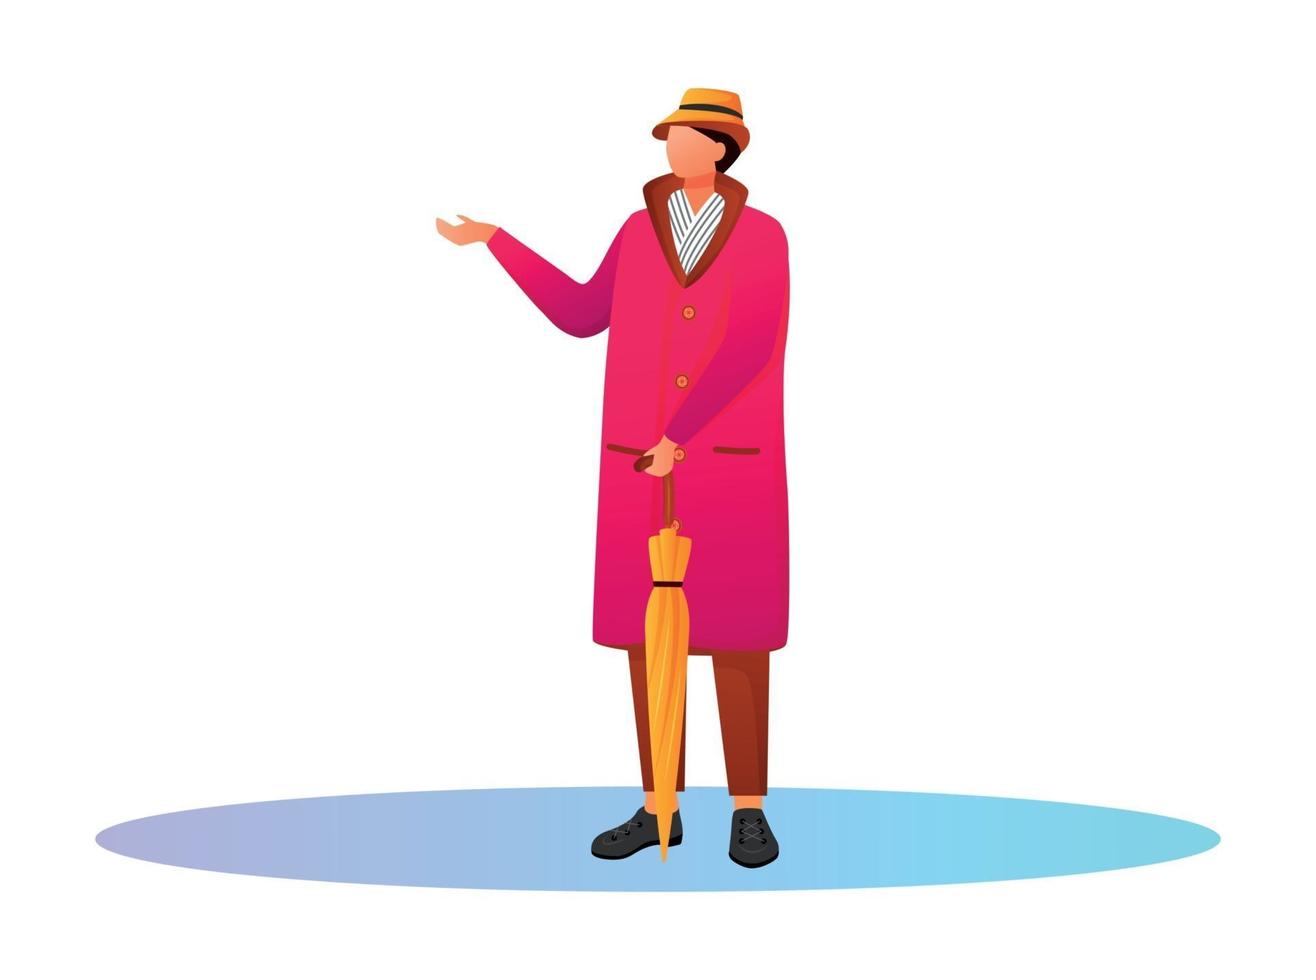 Mann im rosa Regenmantel flacher Farbvektor gesichtsloser Charakter vektor